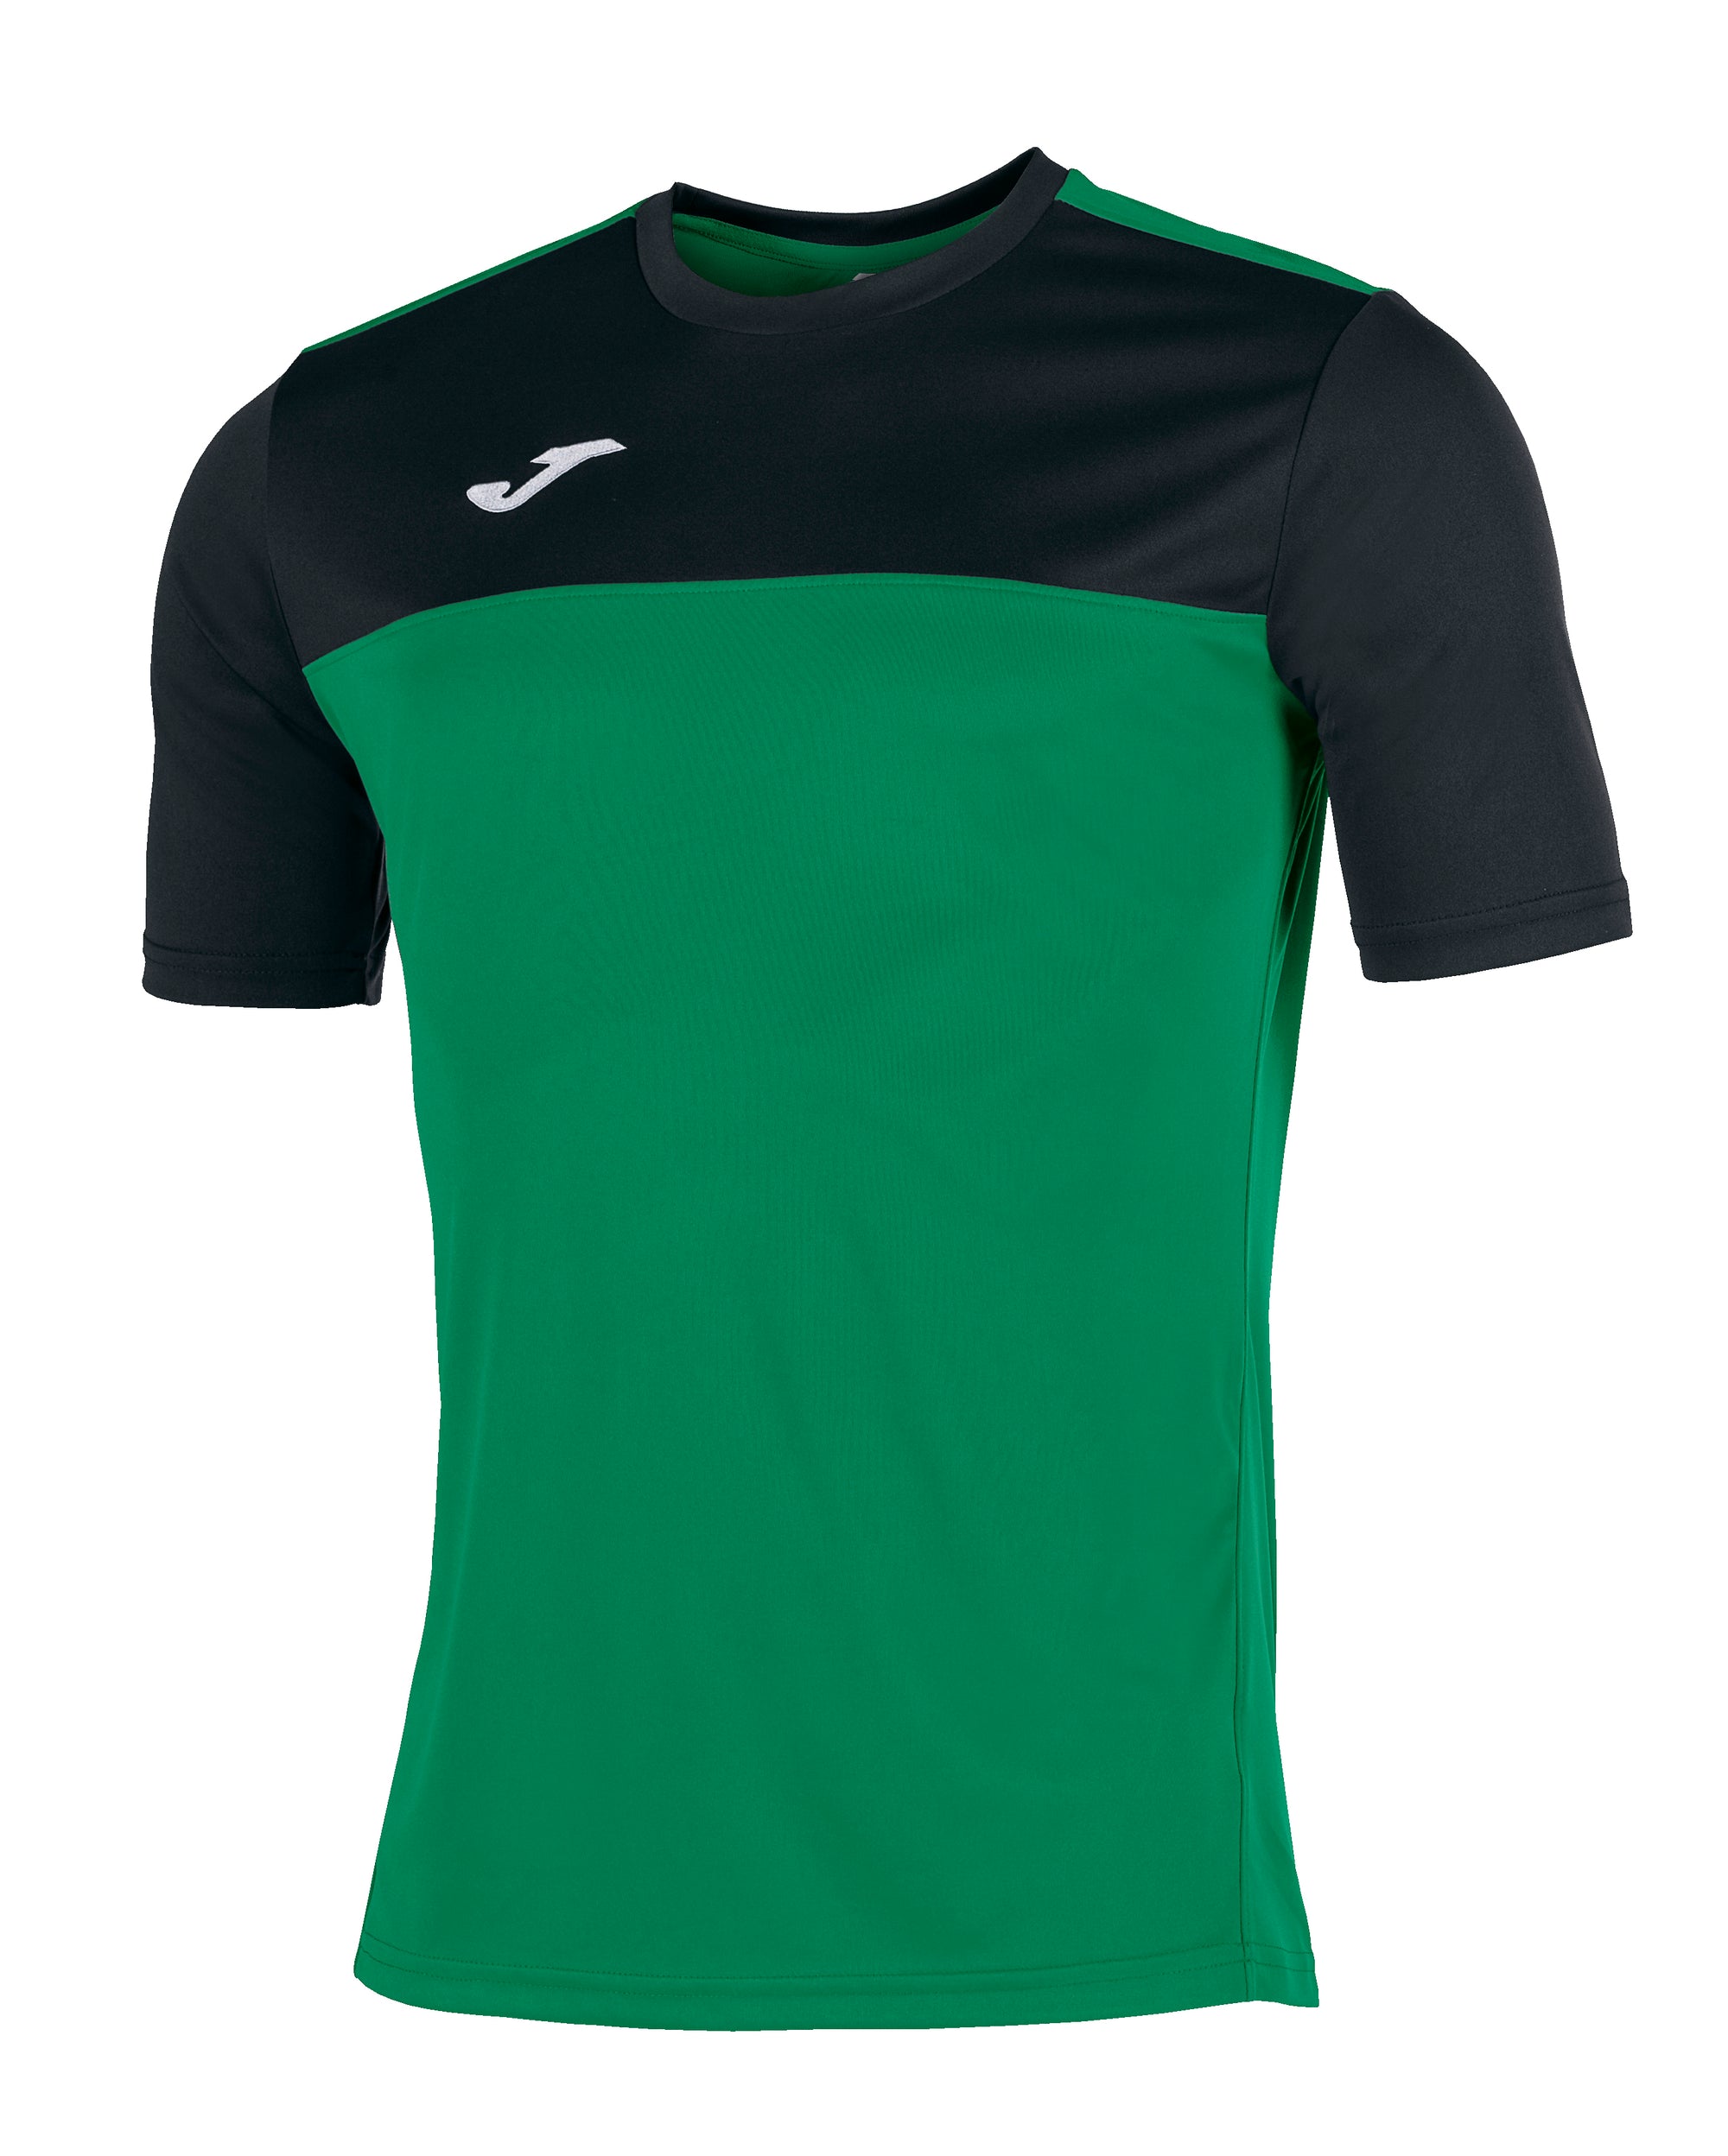 Joma Winner Short Sleeved T-Shirt - Green Medium/Black